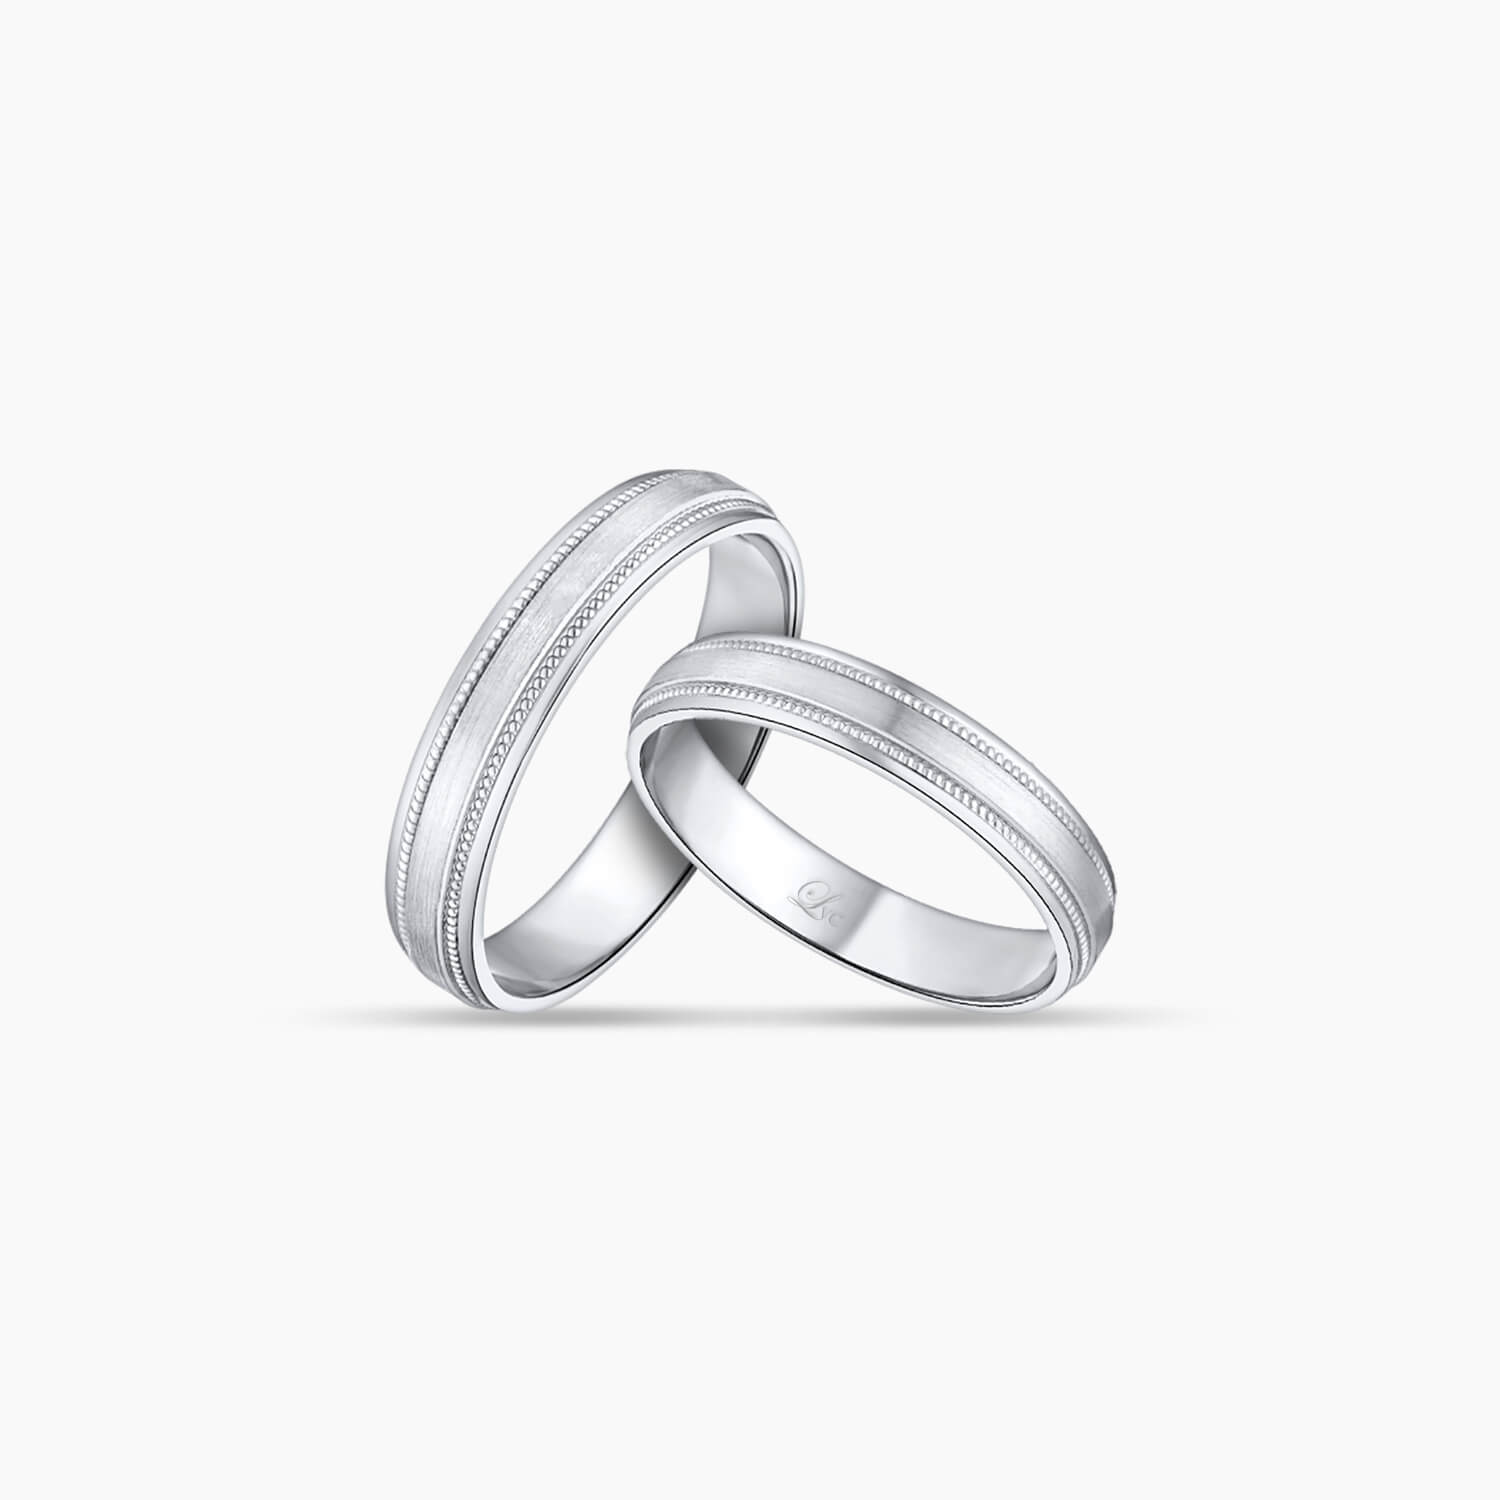 LVC Purete Wedding Ring for couples in Platinum with Milgrain Design